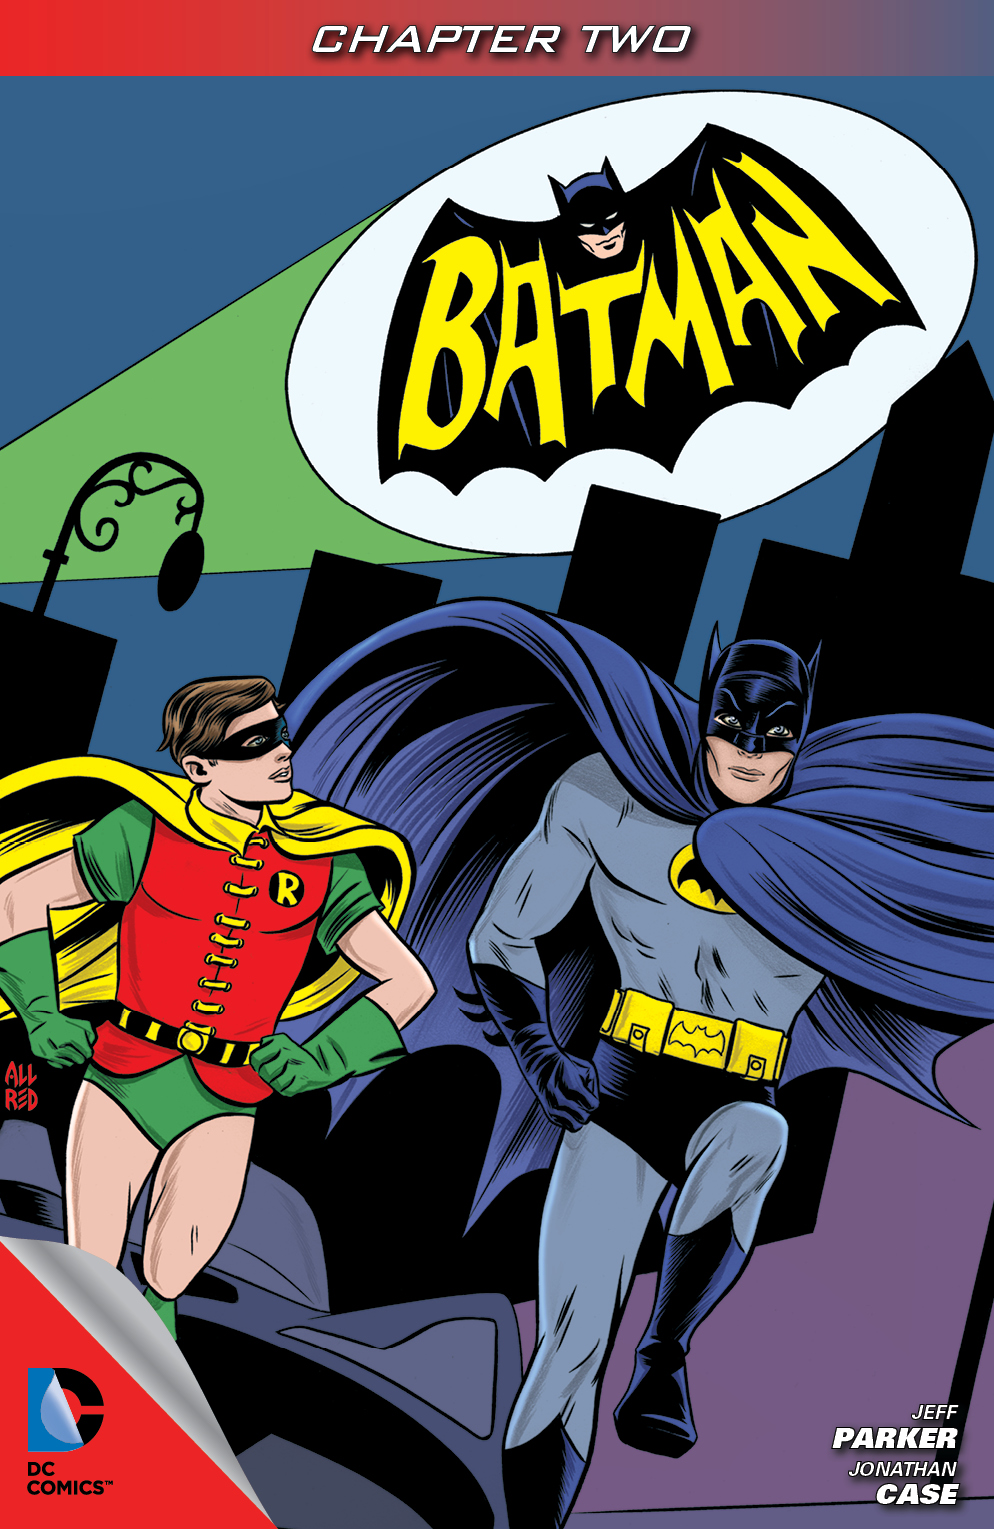 Batman '66 #2 preview images